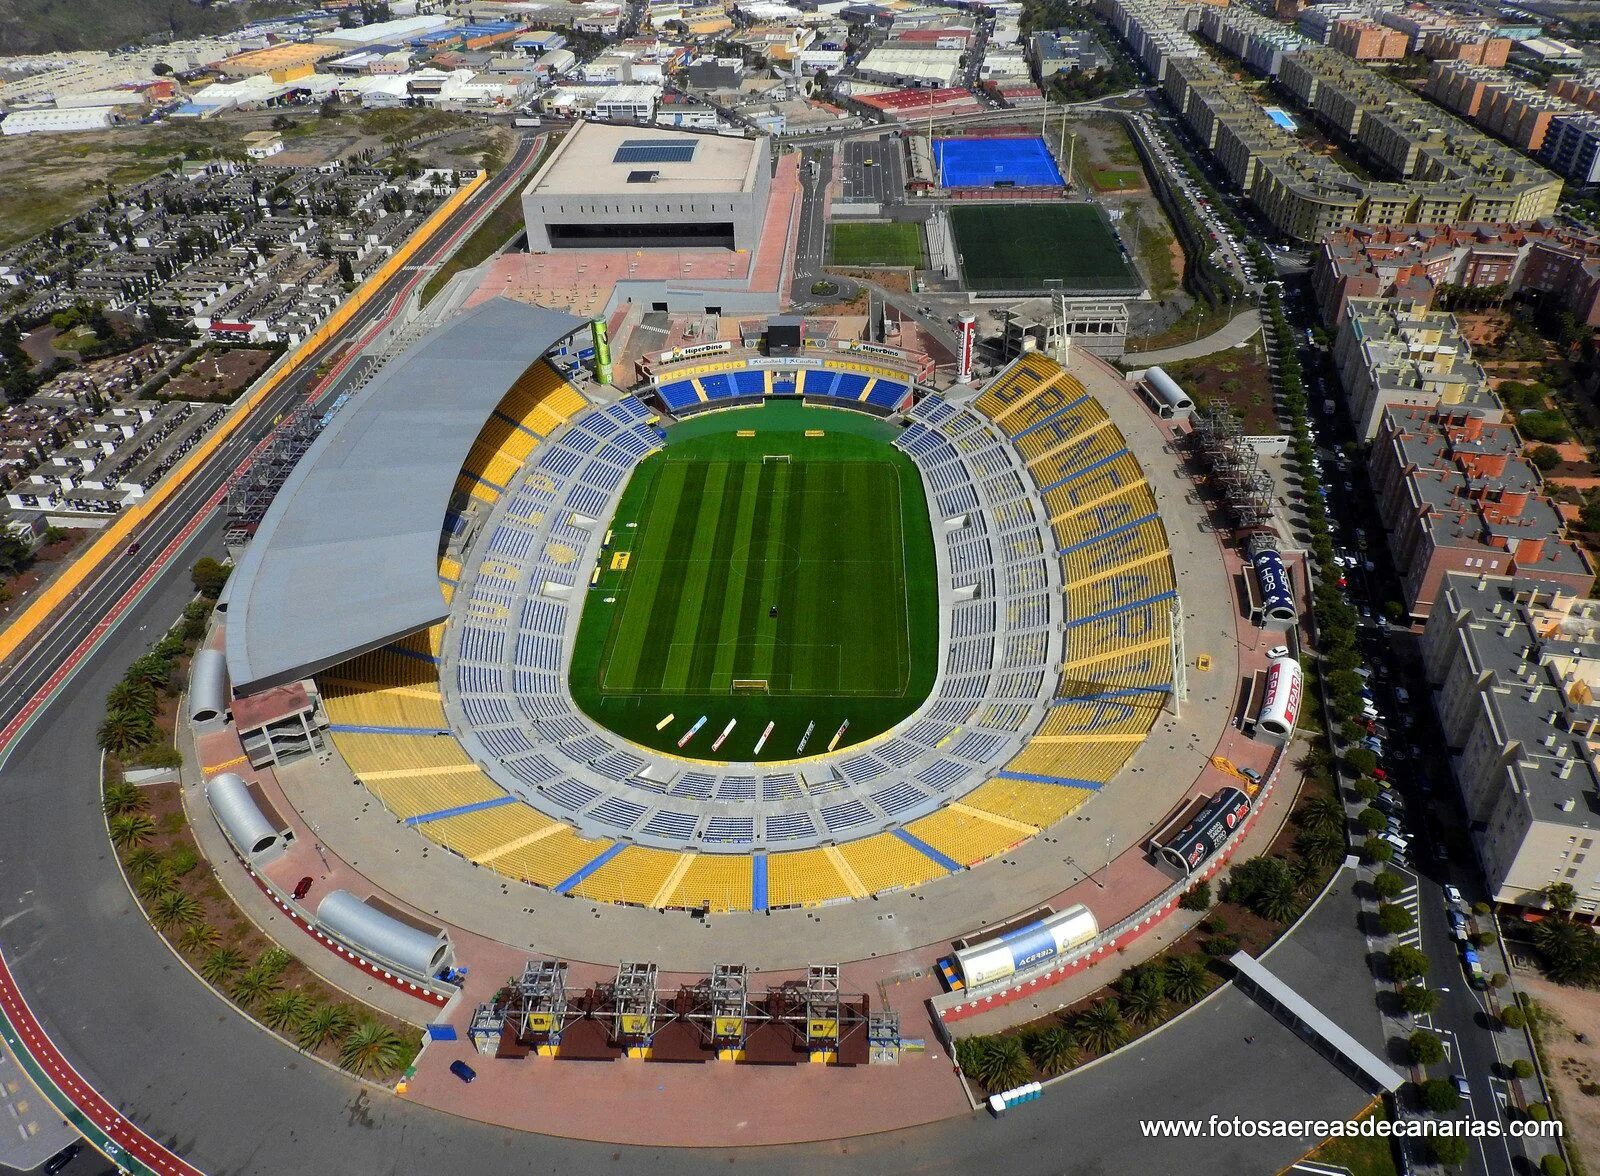 Лас Пальмас стадион. Стадион ФК Лас Пальмас. Эстадио де Гран Канария. Лас Пальмас де Гран Канария стадион.